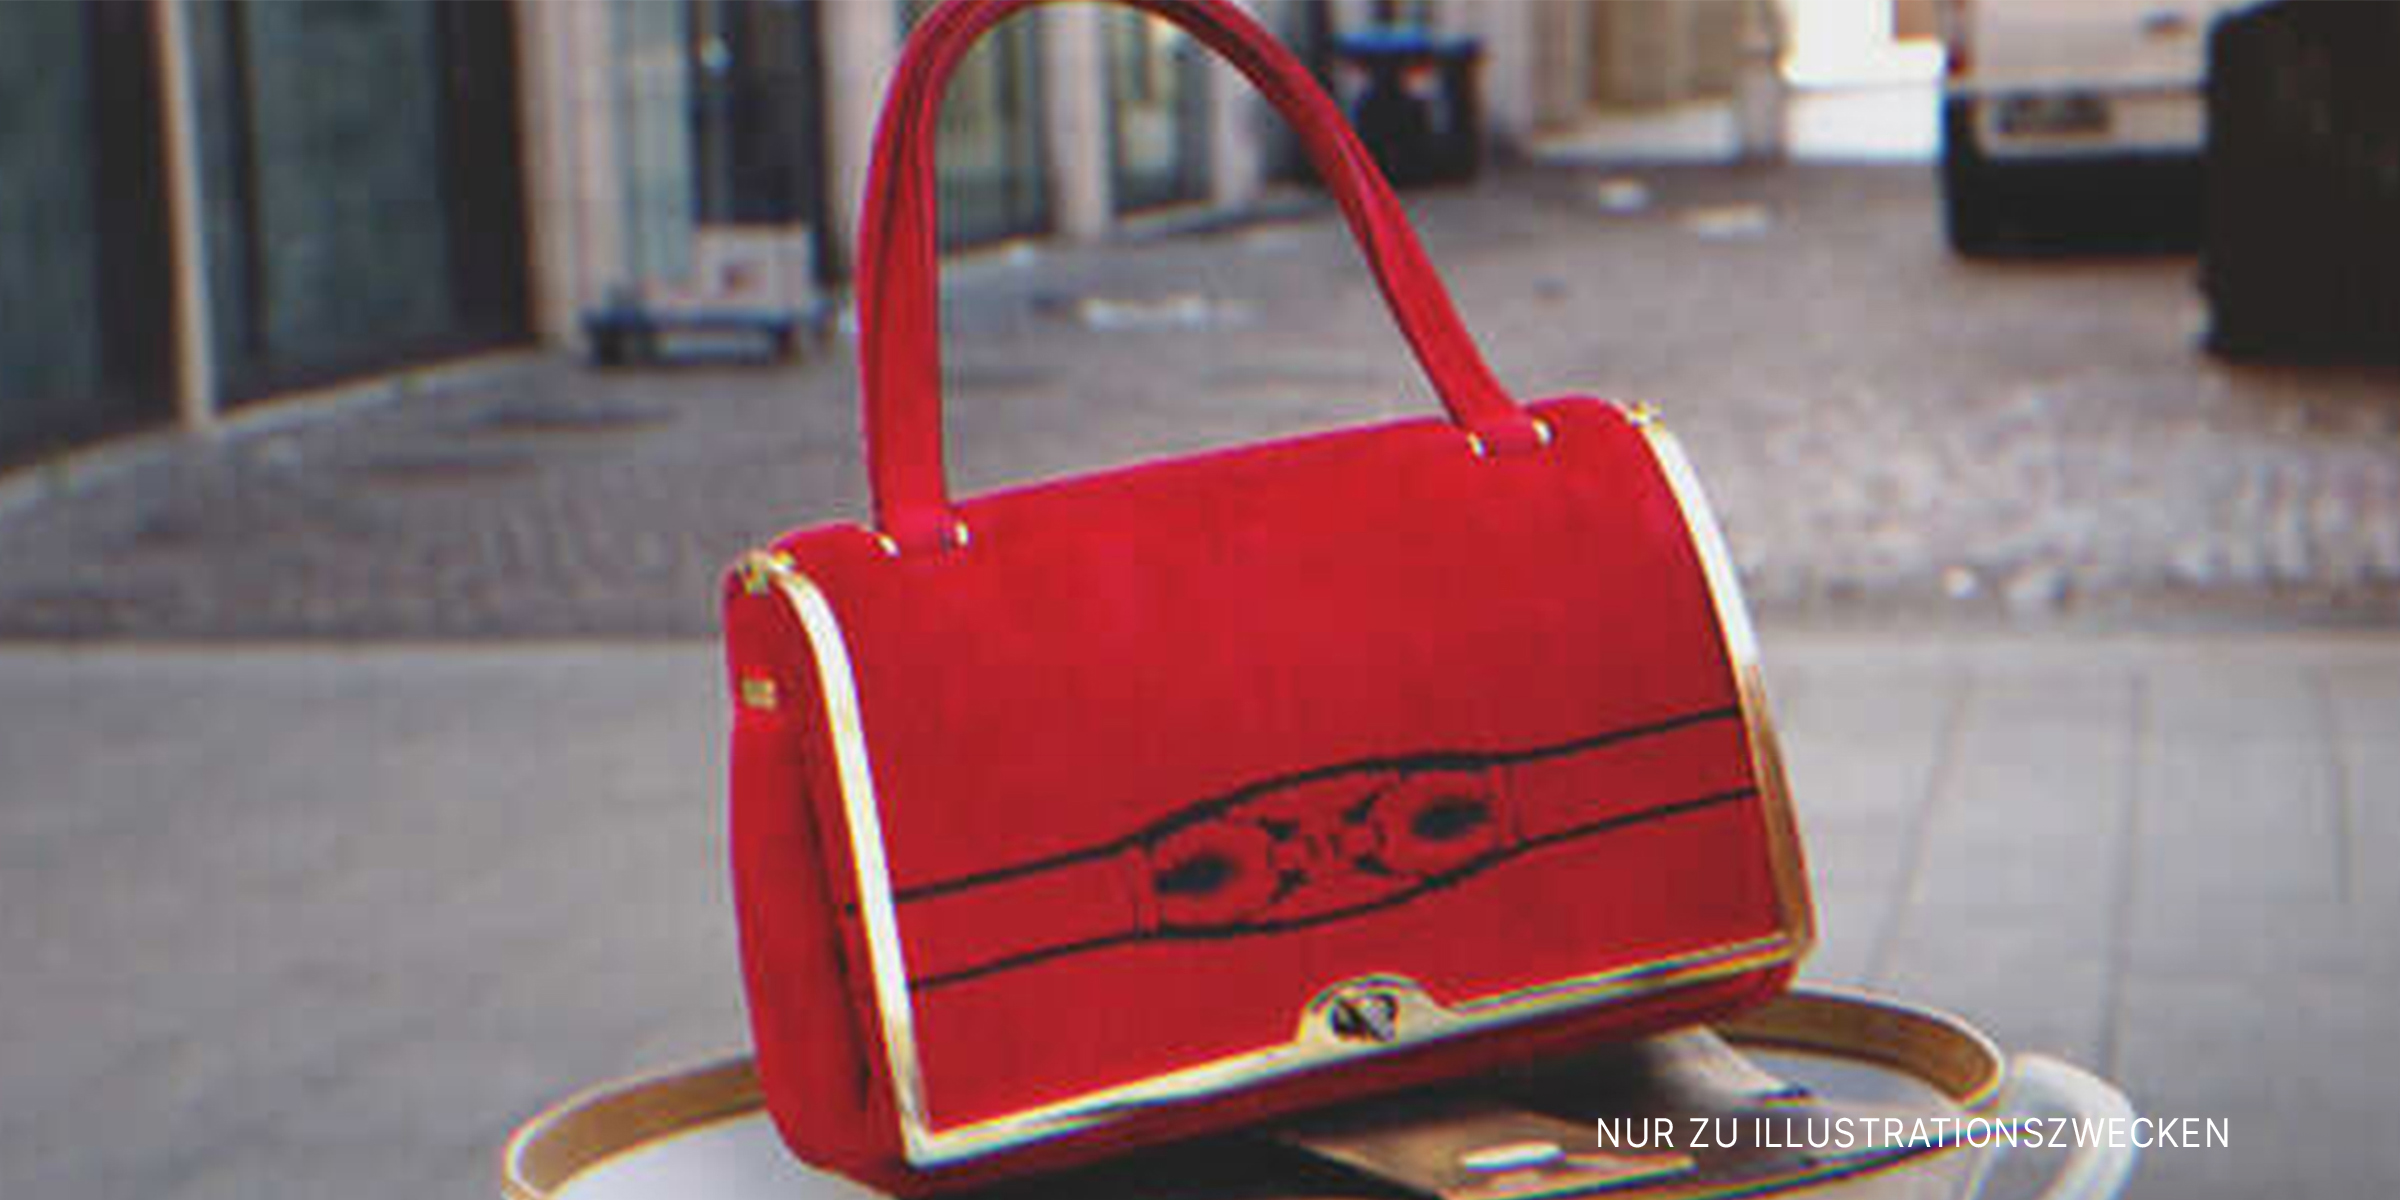 Eine rote Handtasche | Quelle: Shutterstock